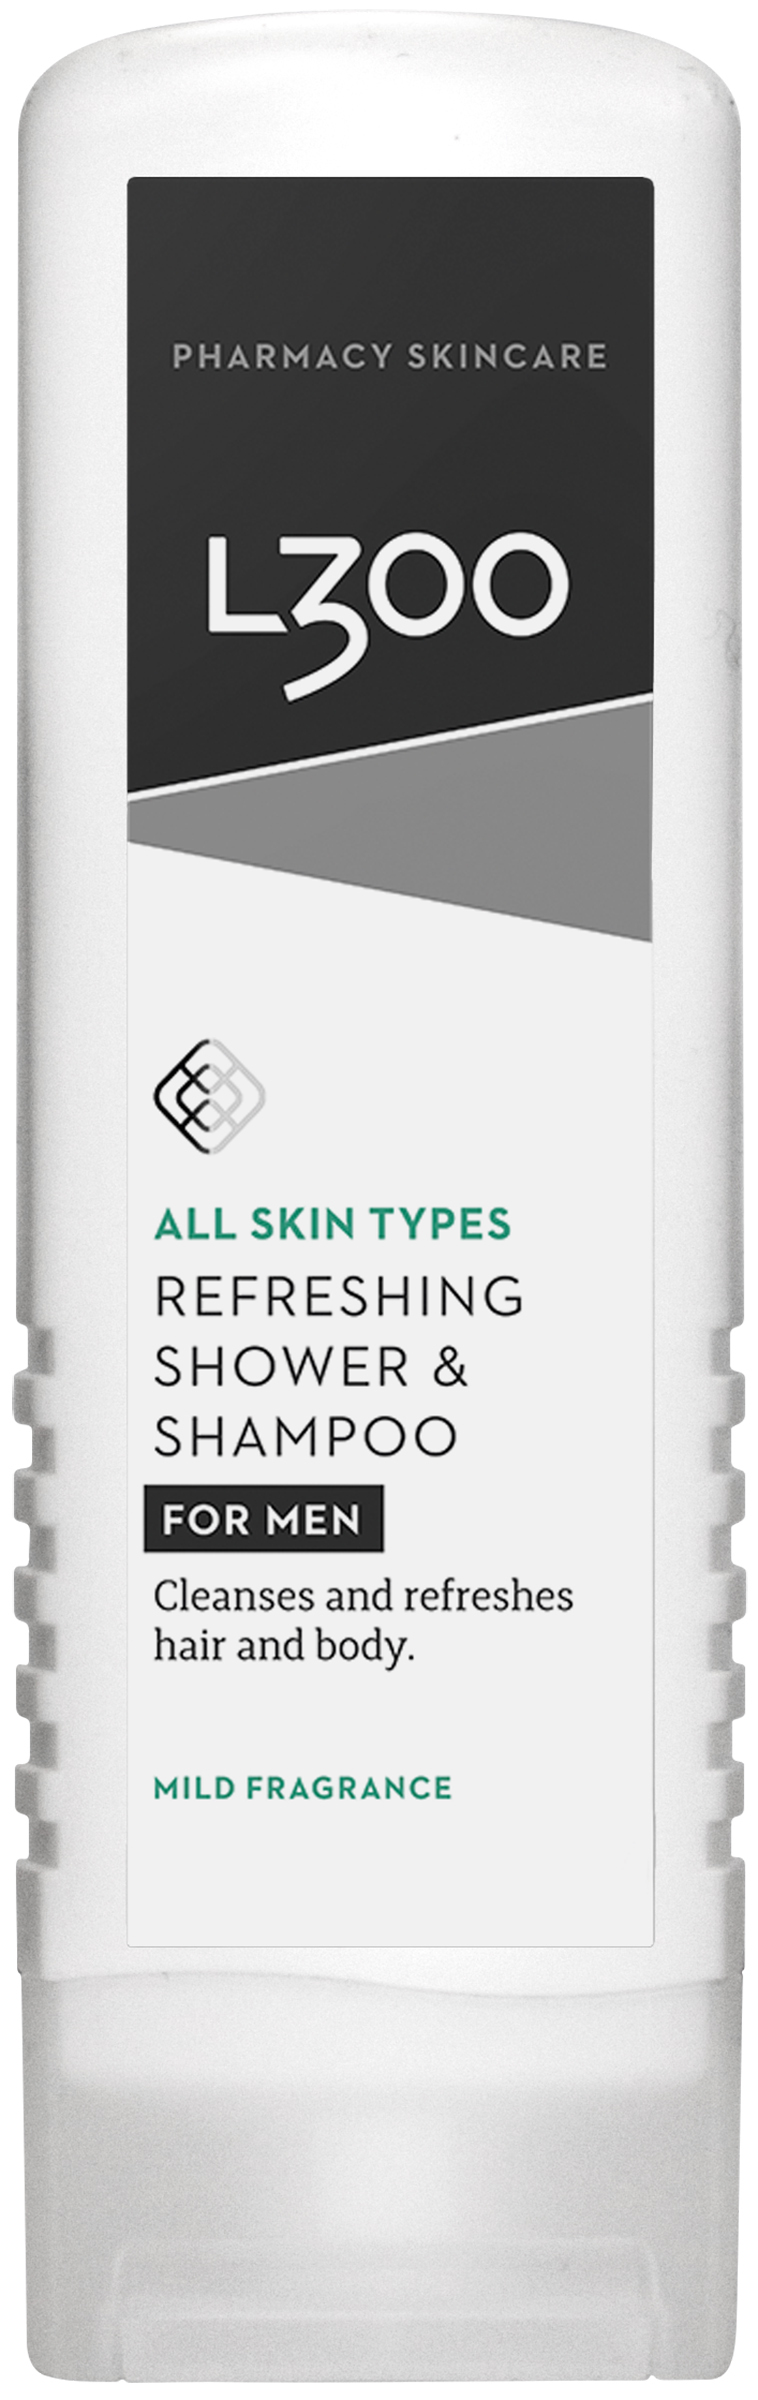 L300 For Men Shower & Shampoo 250 ml